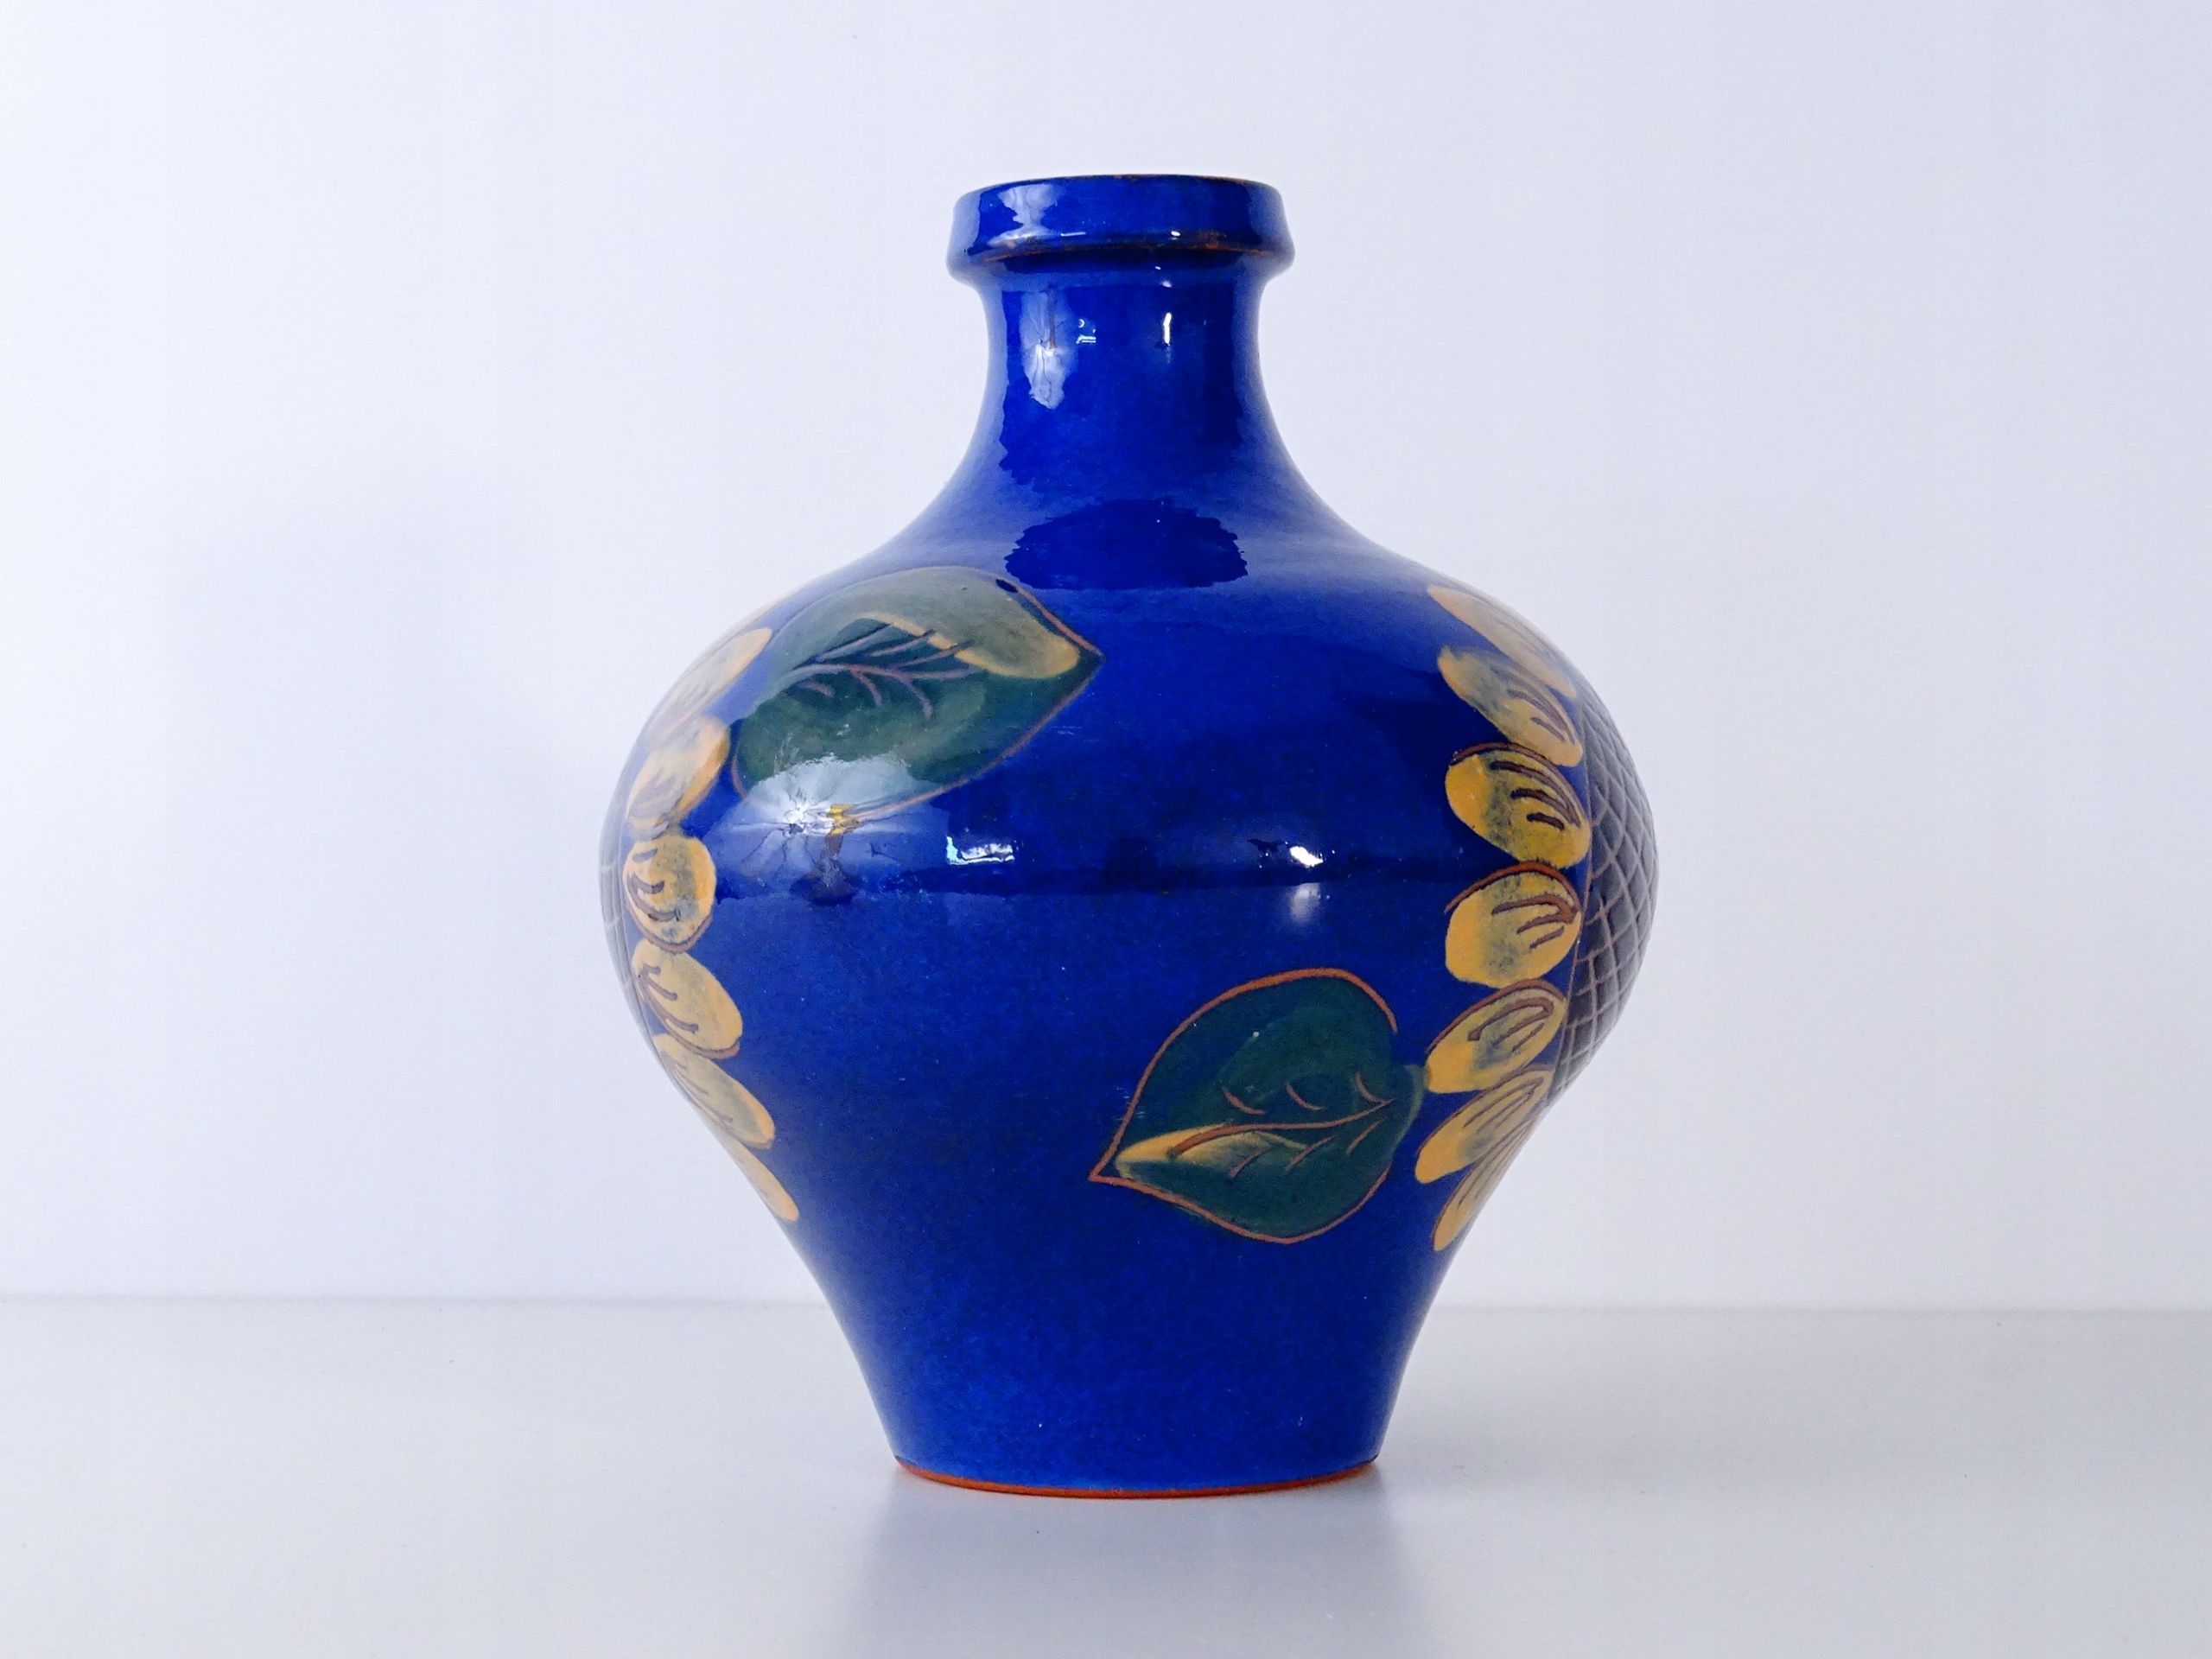 graman romhild wazon ceramiczny słonecznik